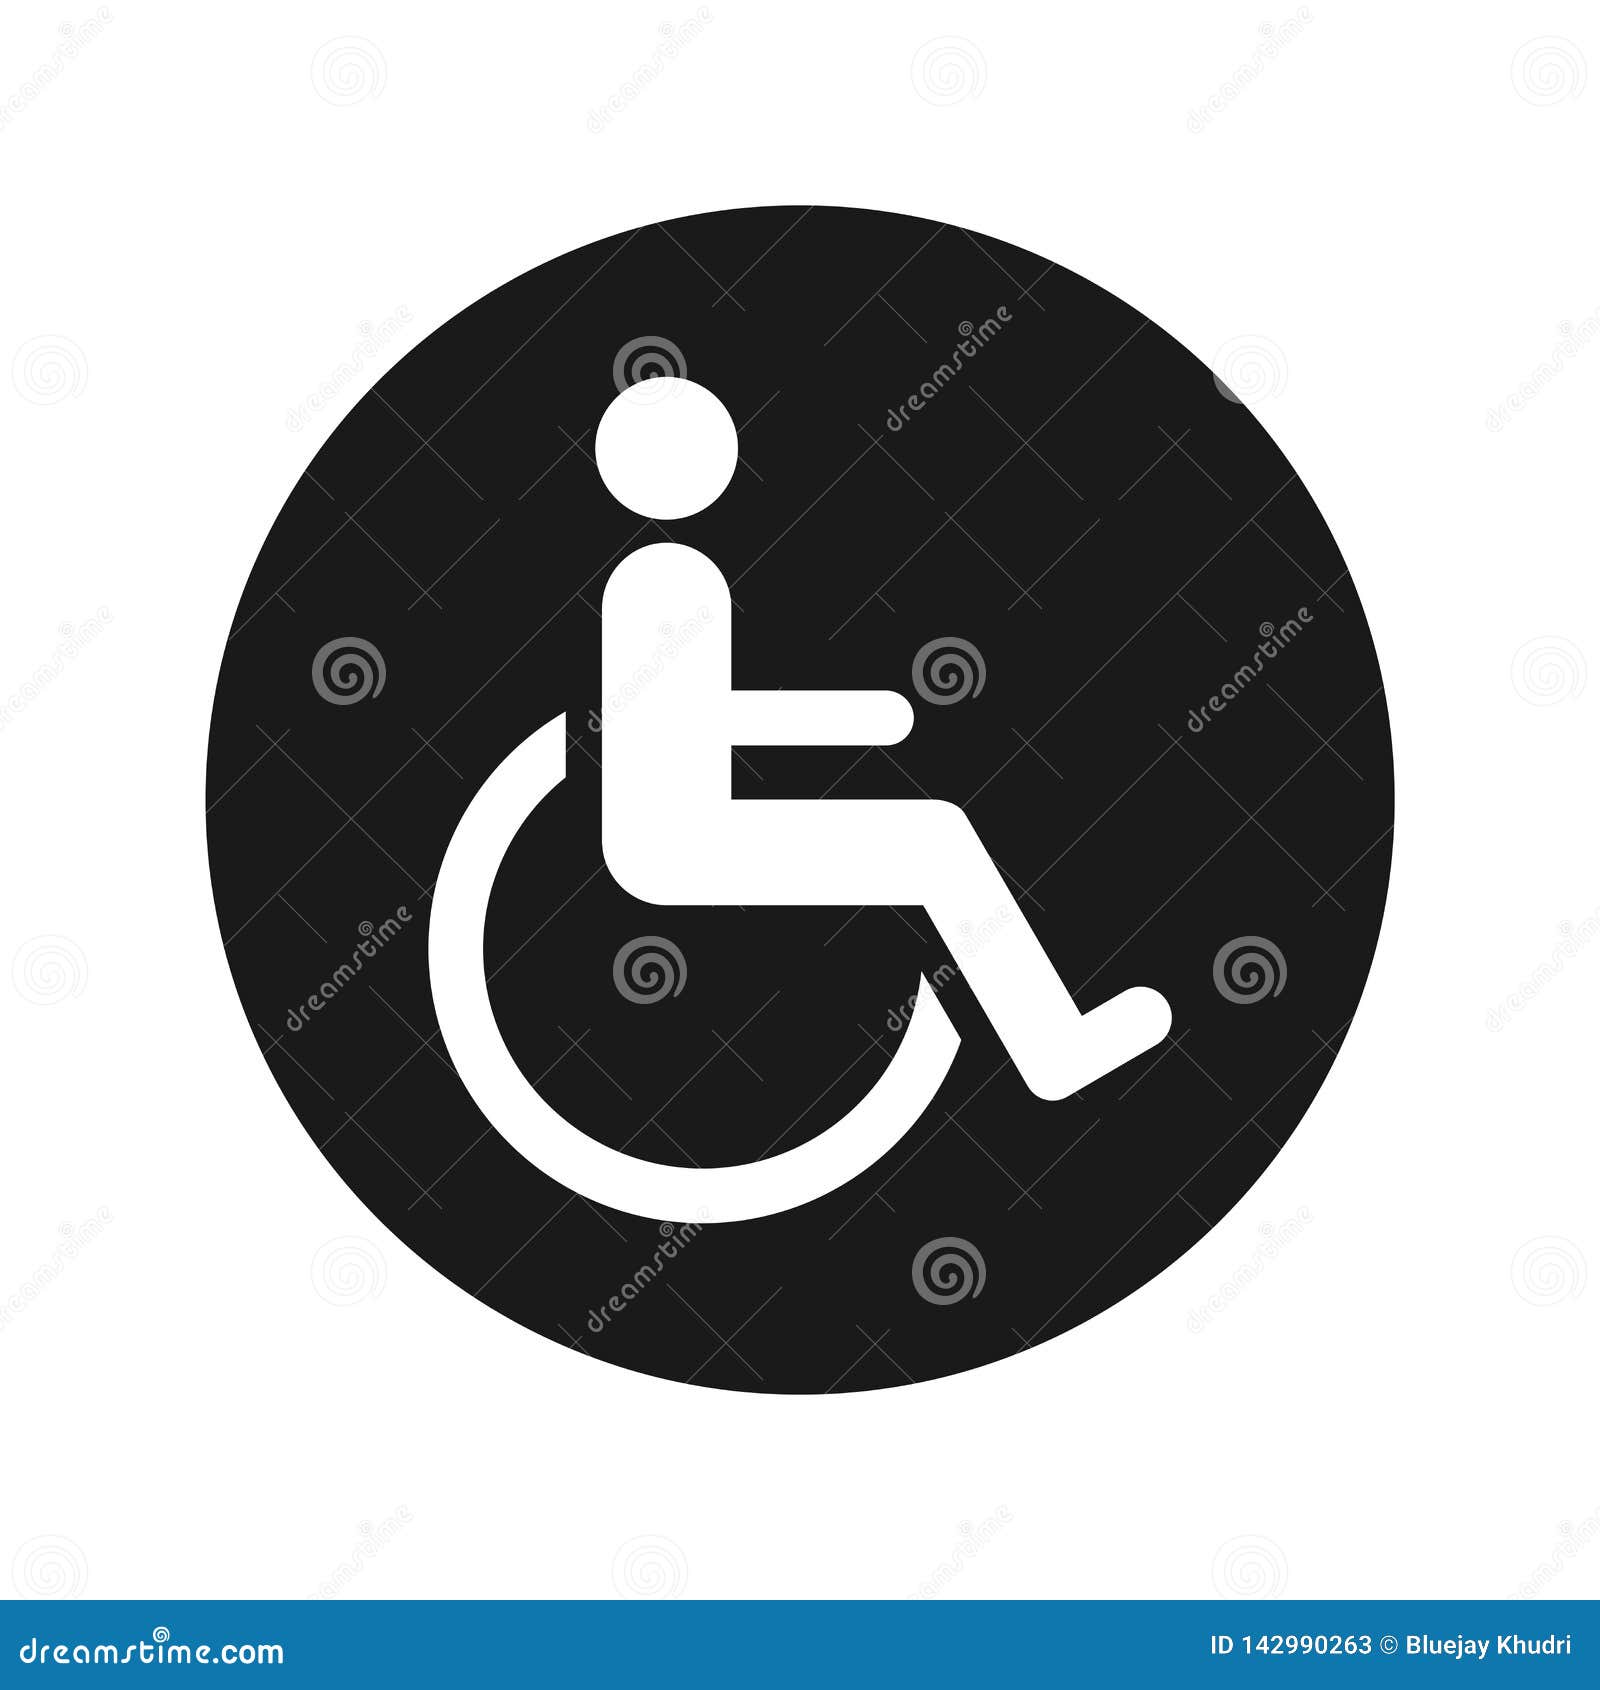 wheelchair handicap icon flat black round button  